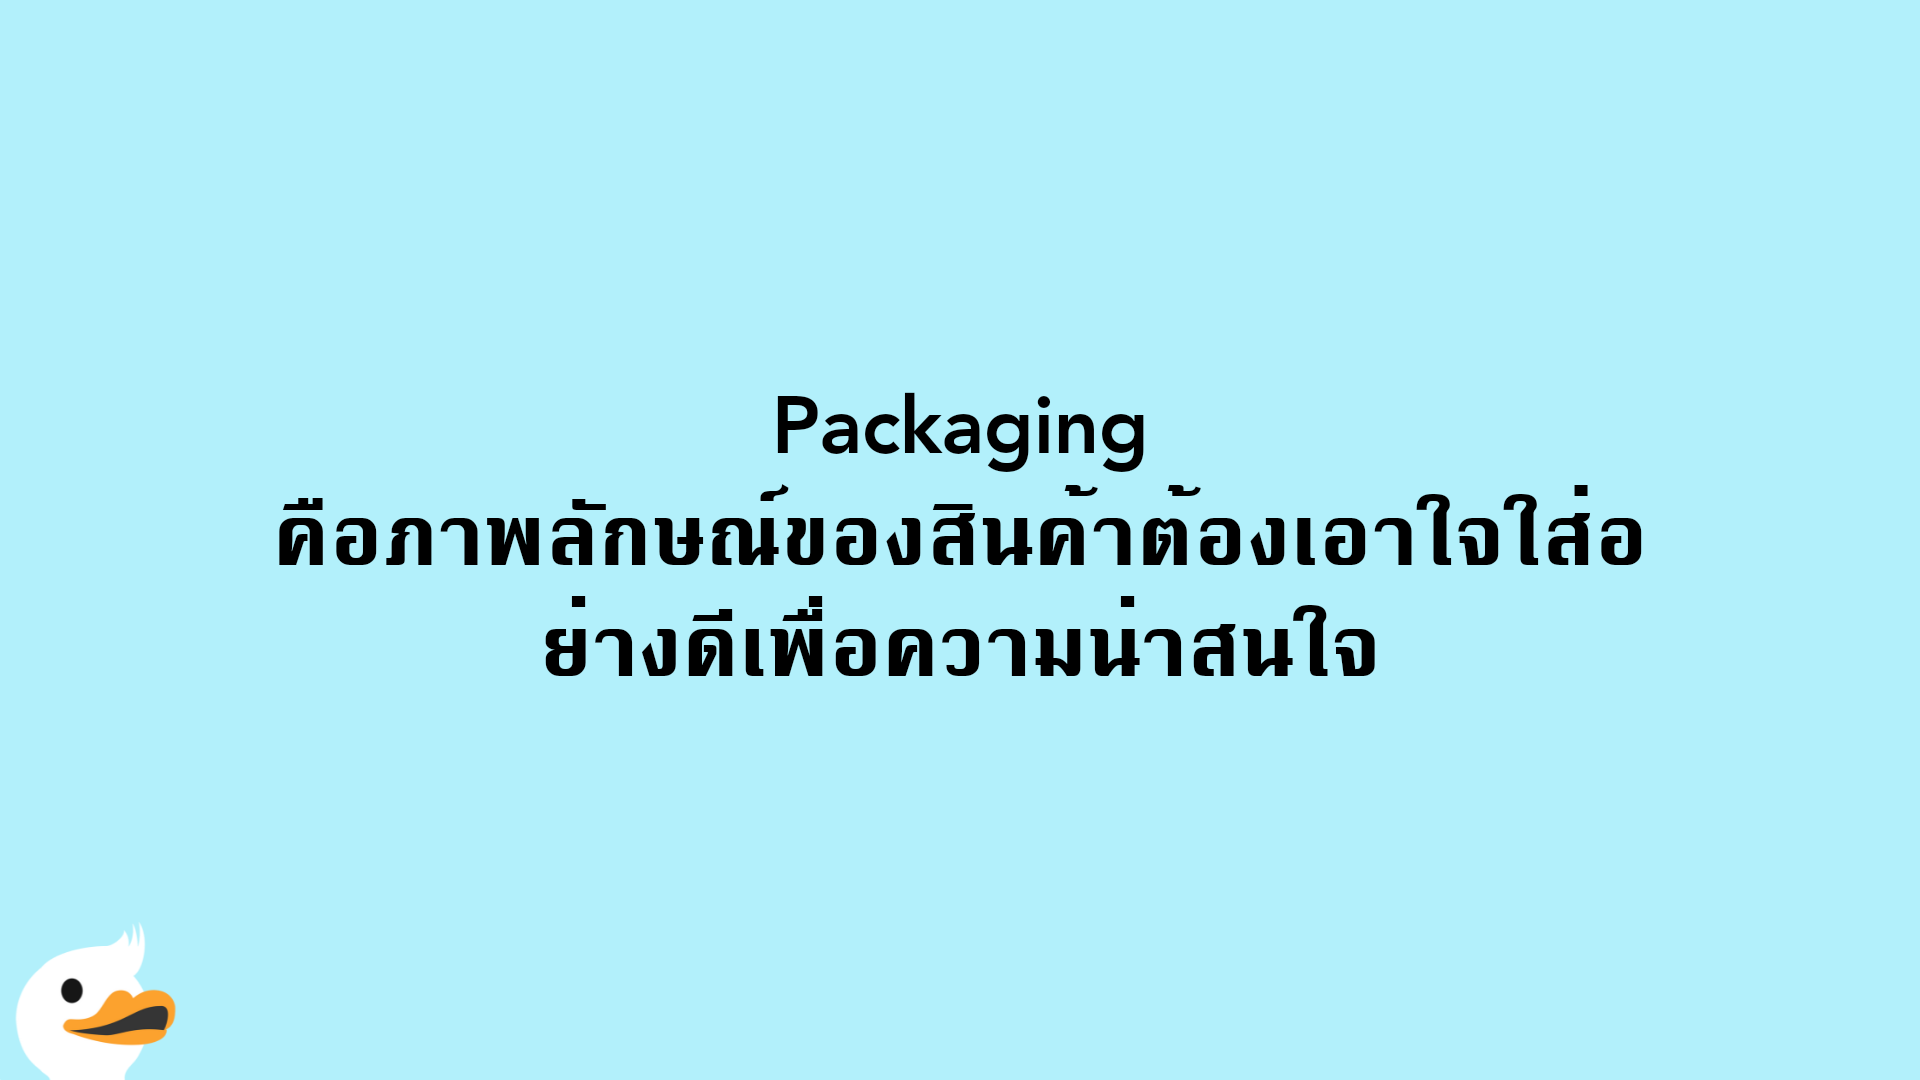 Packaging คือภาพลักษณ์ของสินค้าต้องเอาใจใส่อย่างดีเพื่อความน่าสนใจ